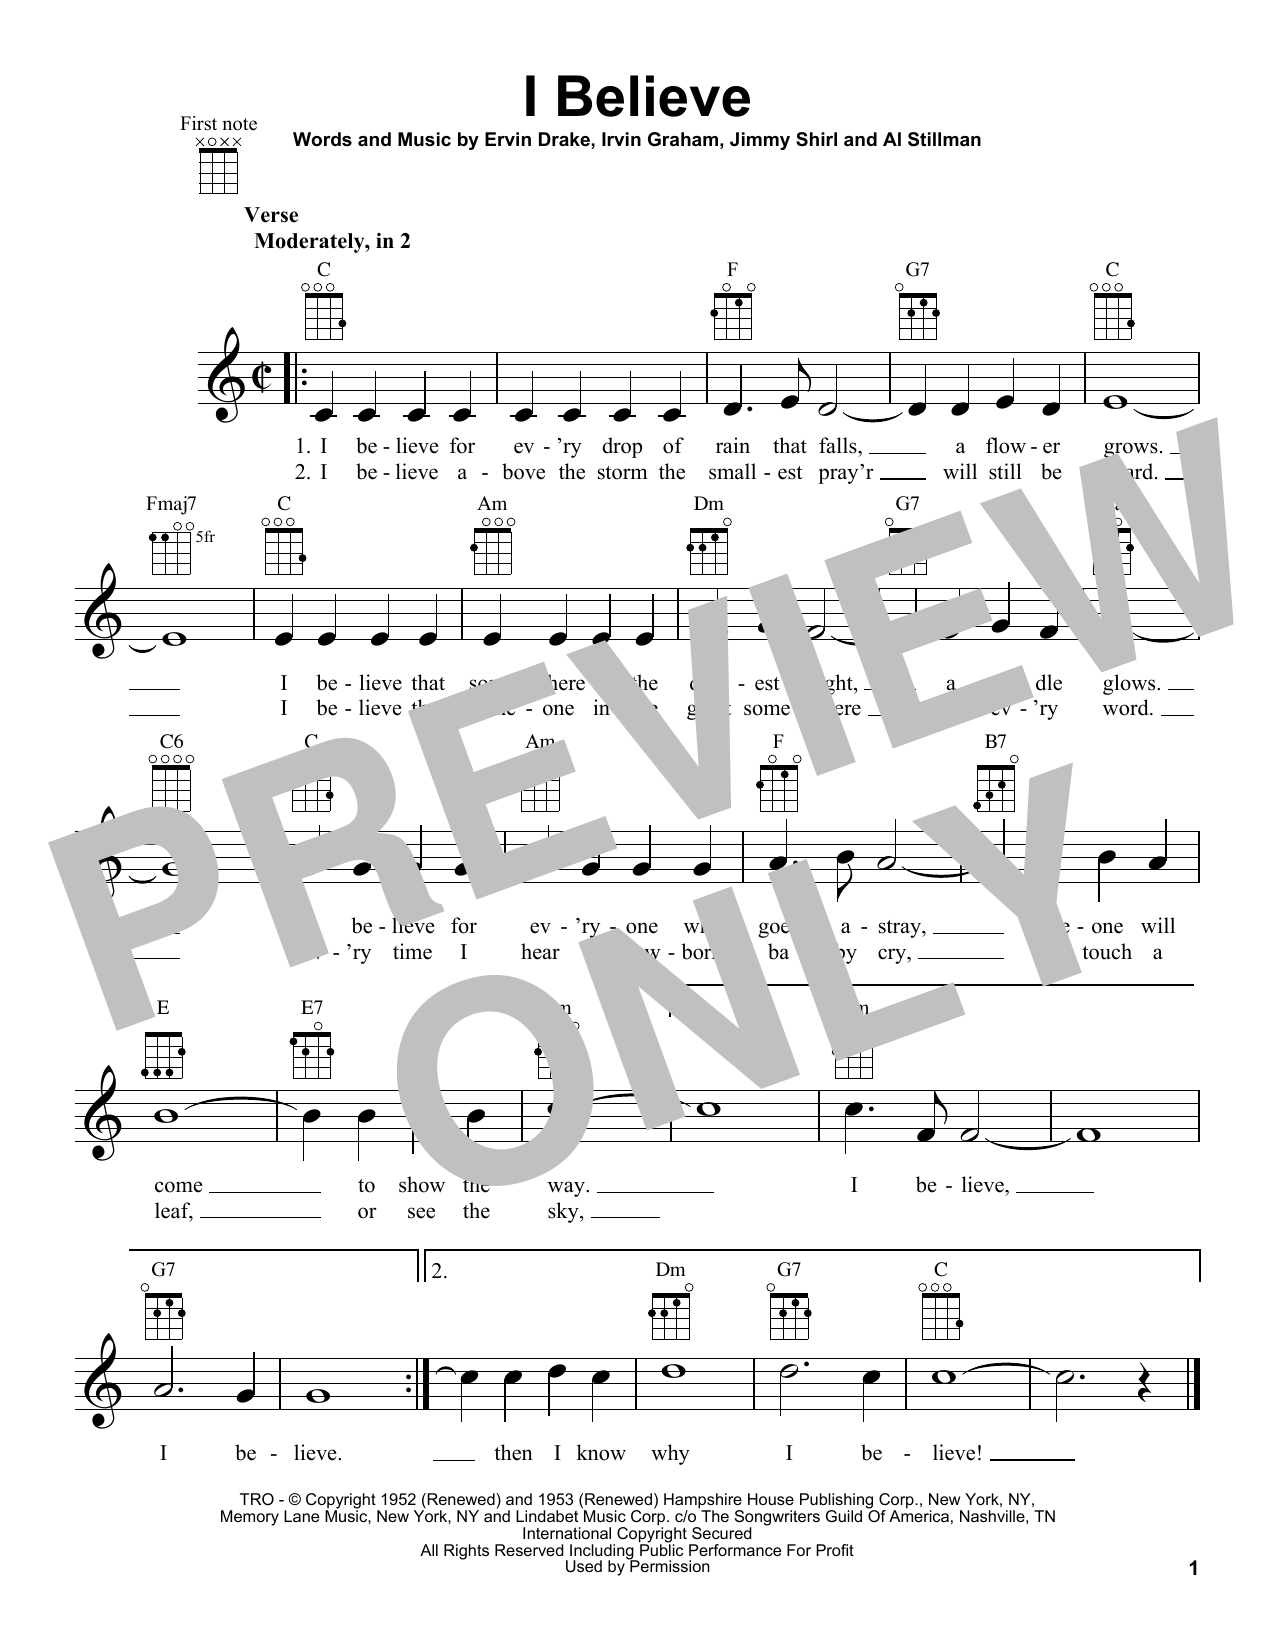 Ervin Drake I Believe Sheet Music Notes & Chords for Ukulele - Download or Print PDF